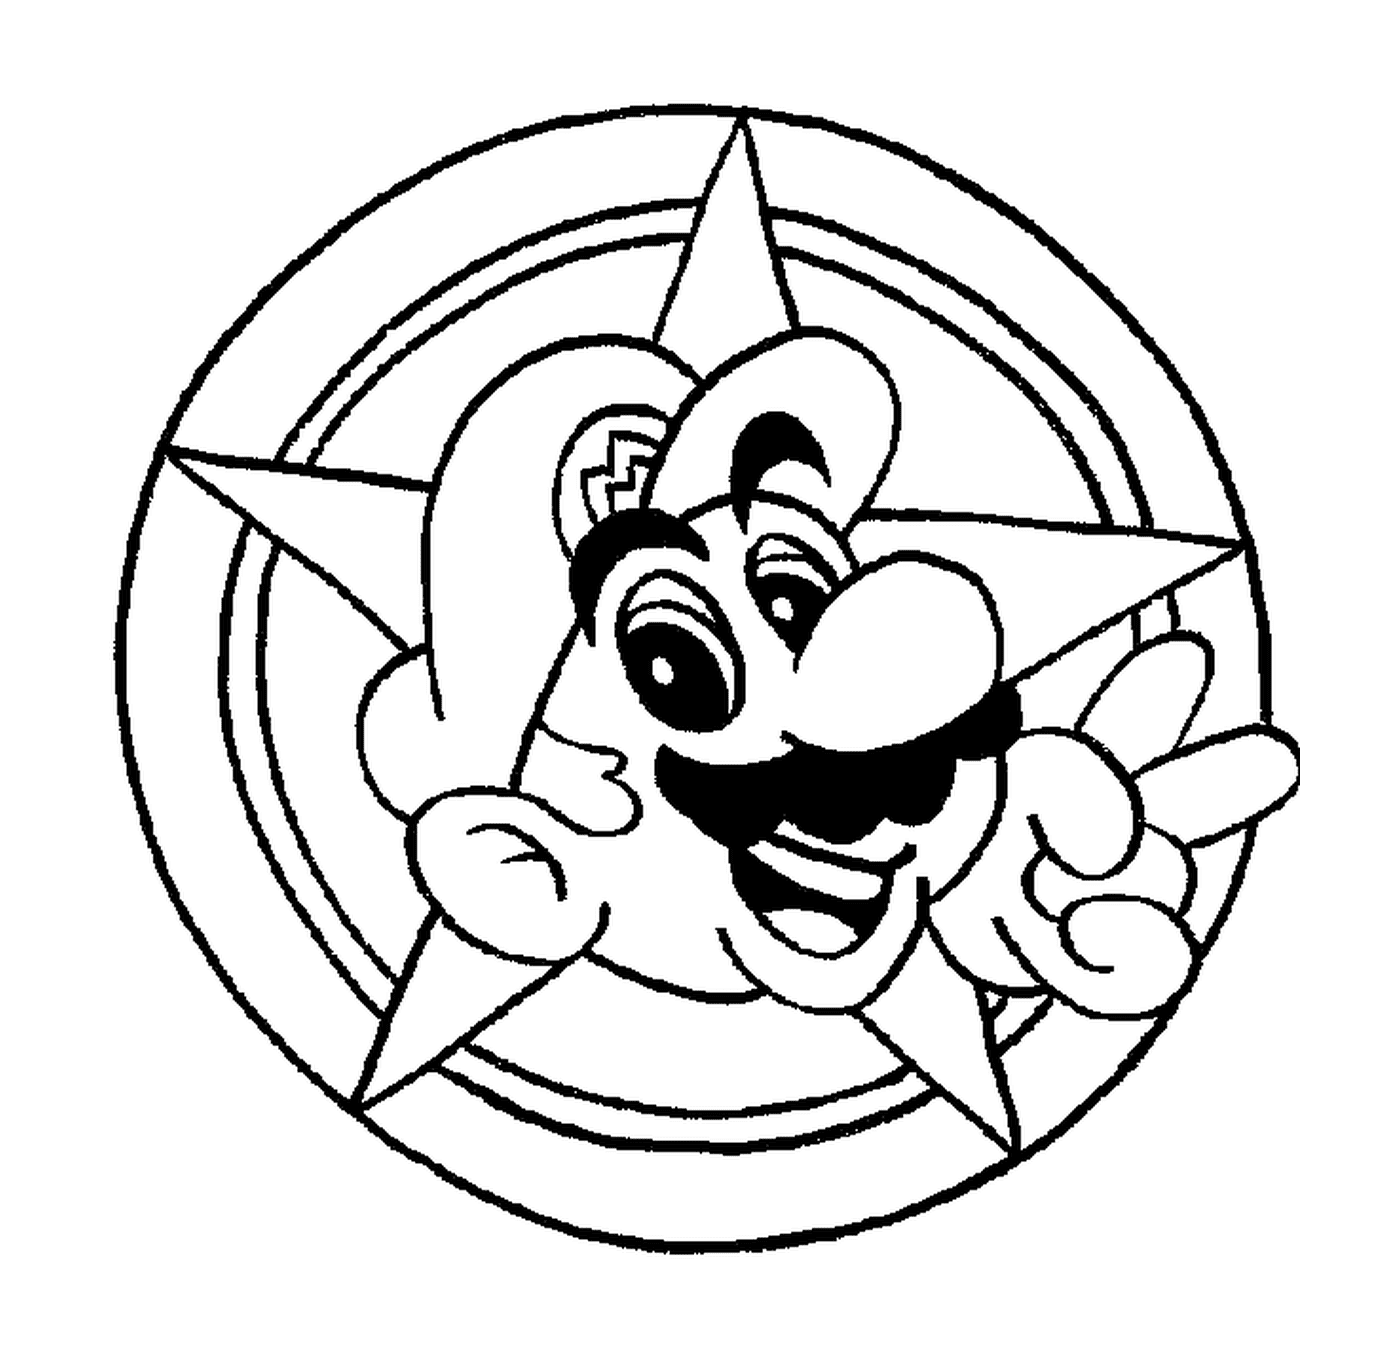  La cabeza de Mario en círculo 